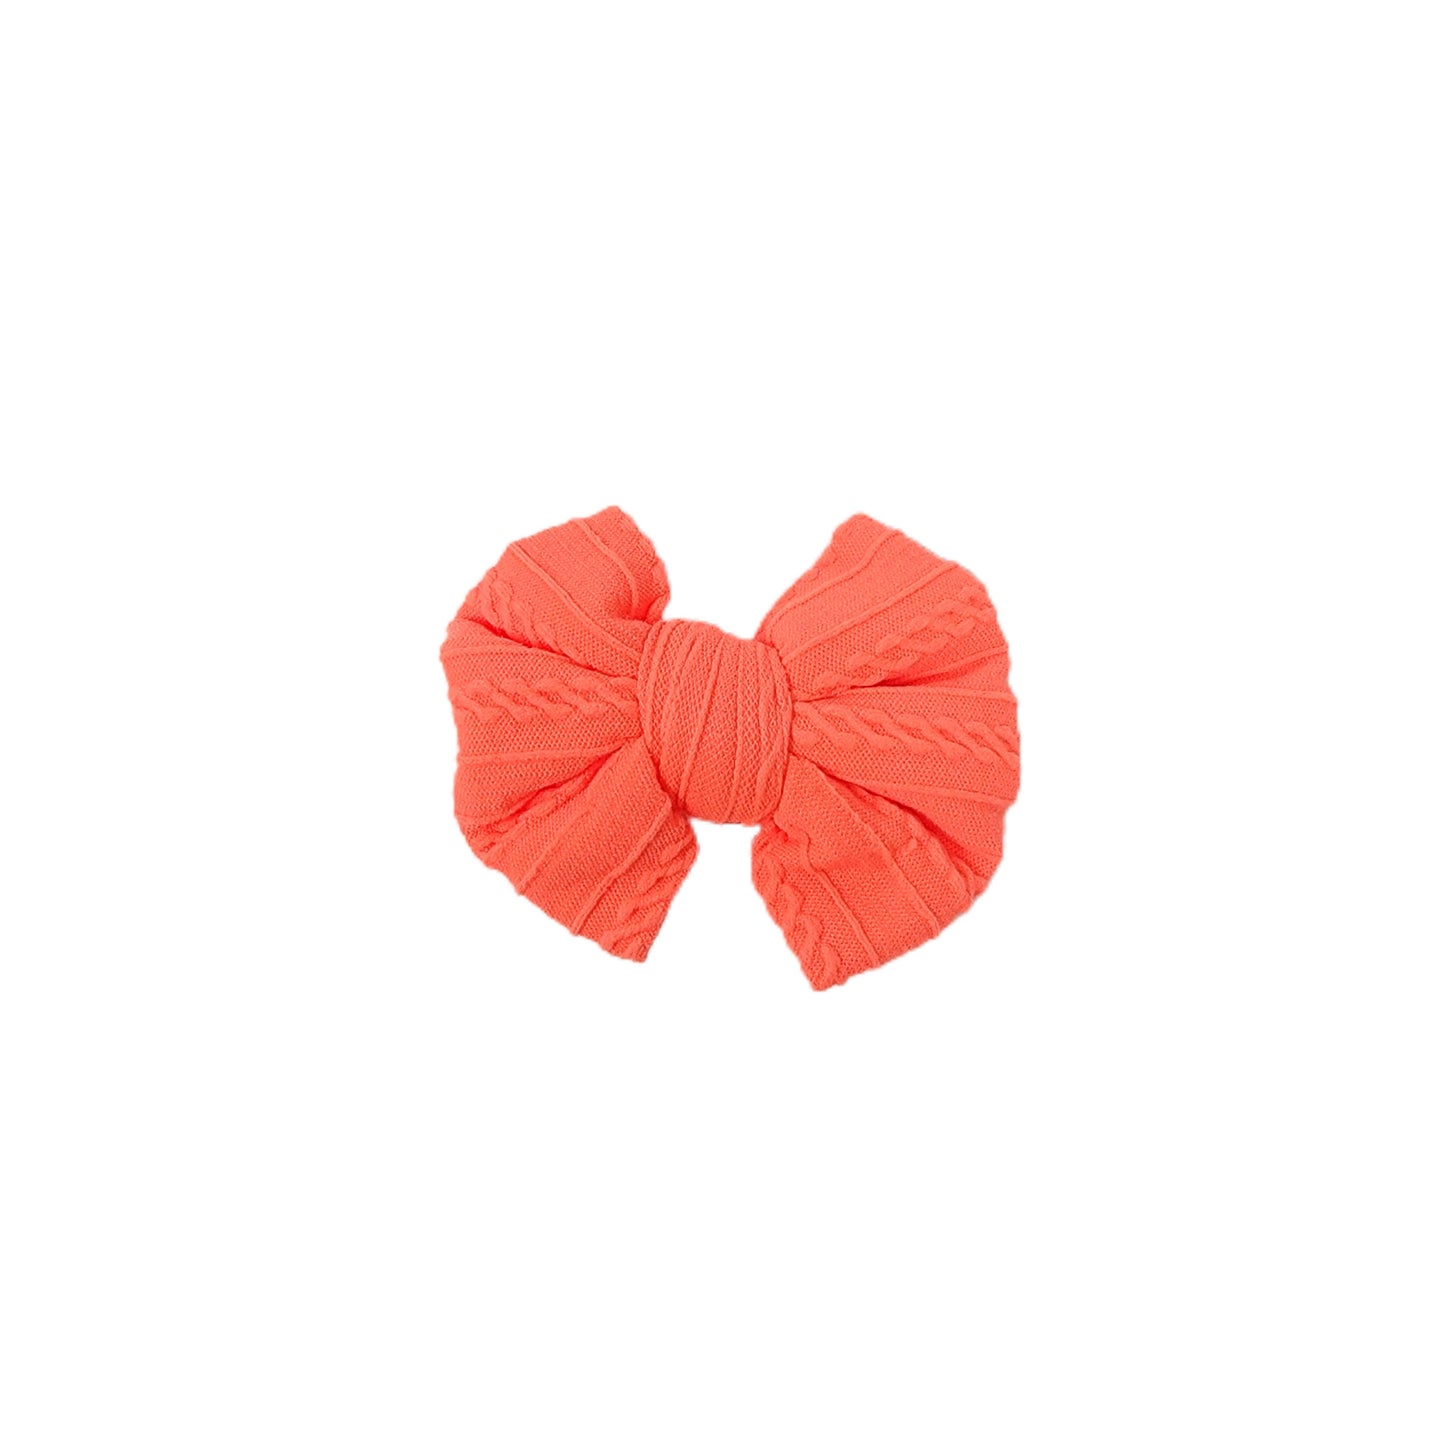 Neon Orange Braid Knit Bow 4"